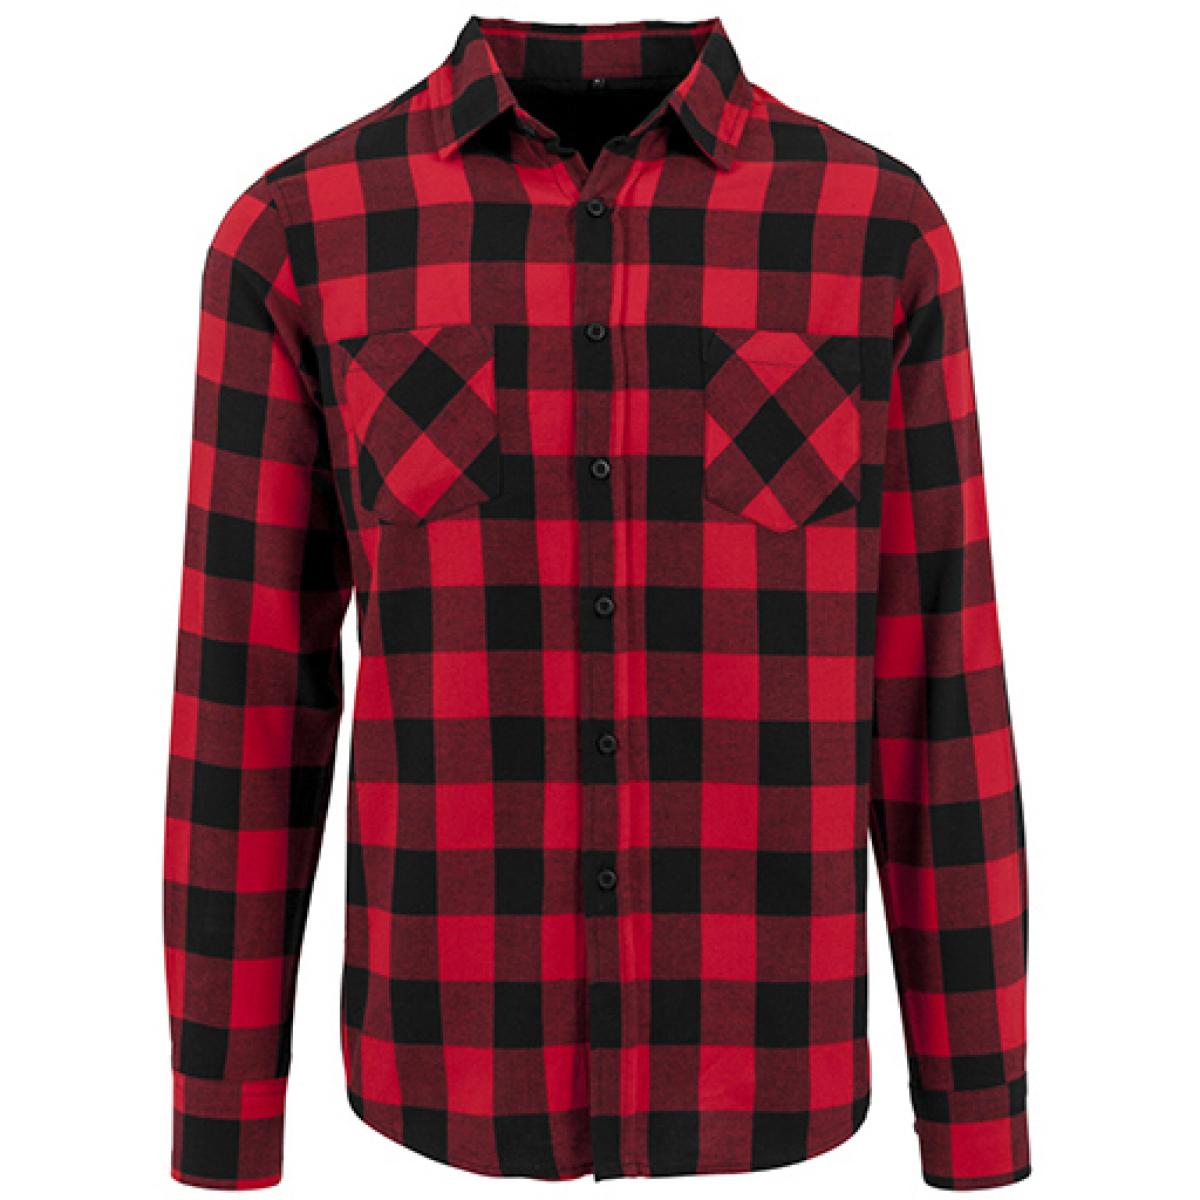 Hersteller: Build Your Brand Herstellernummer: BY031 Artikelbezeichnung: Checked Flannel Shirt - Holzfällerhemd Farbe: Black/Red